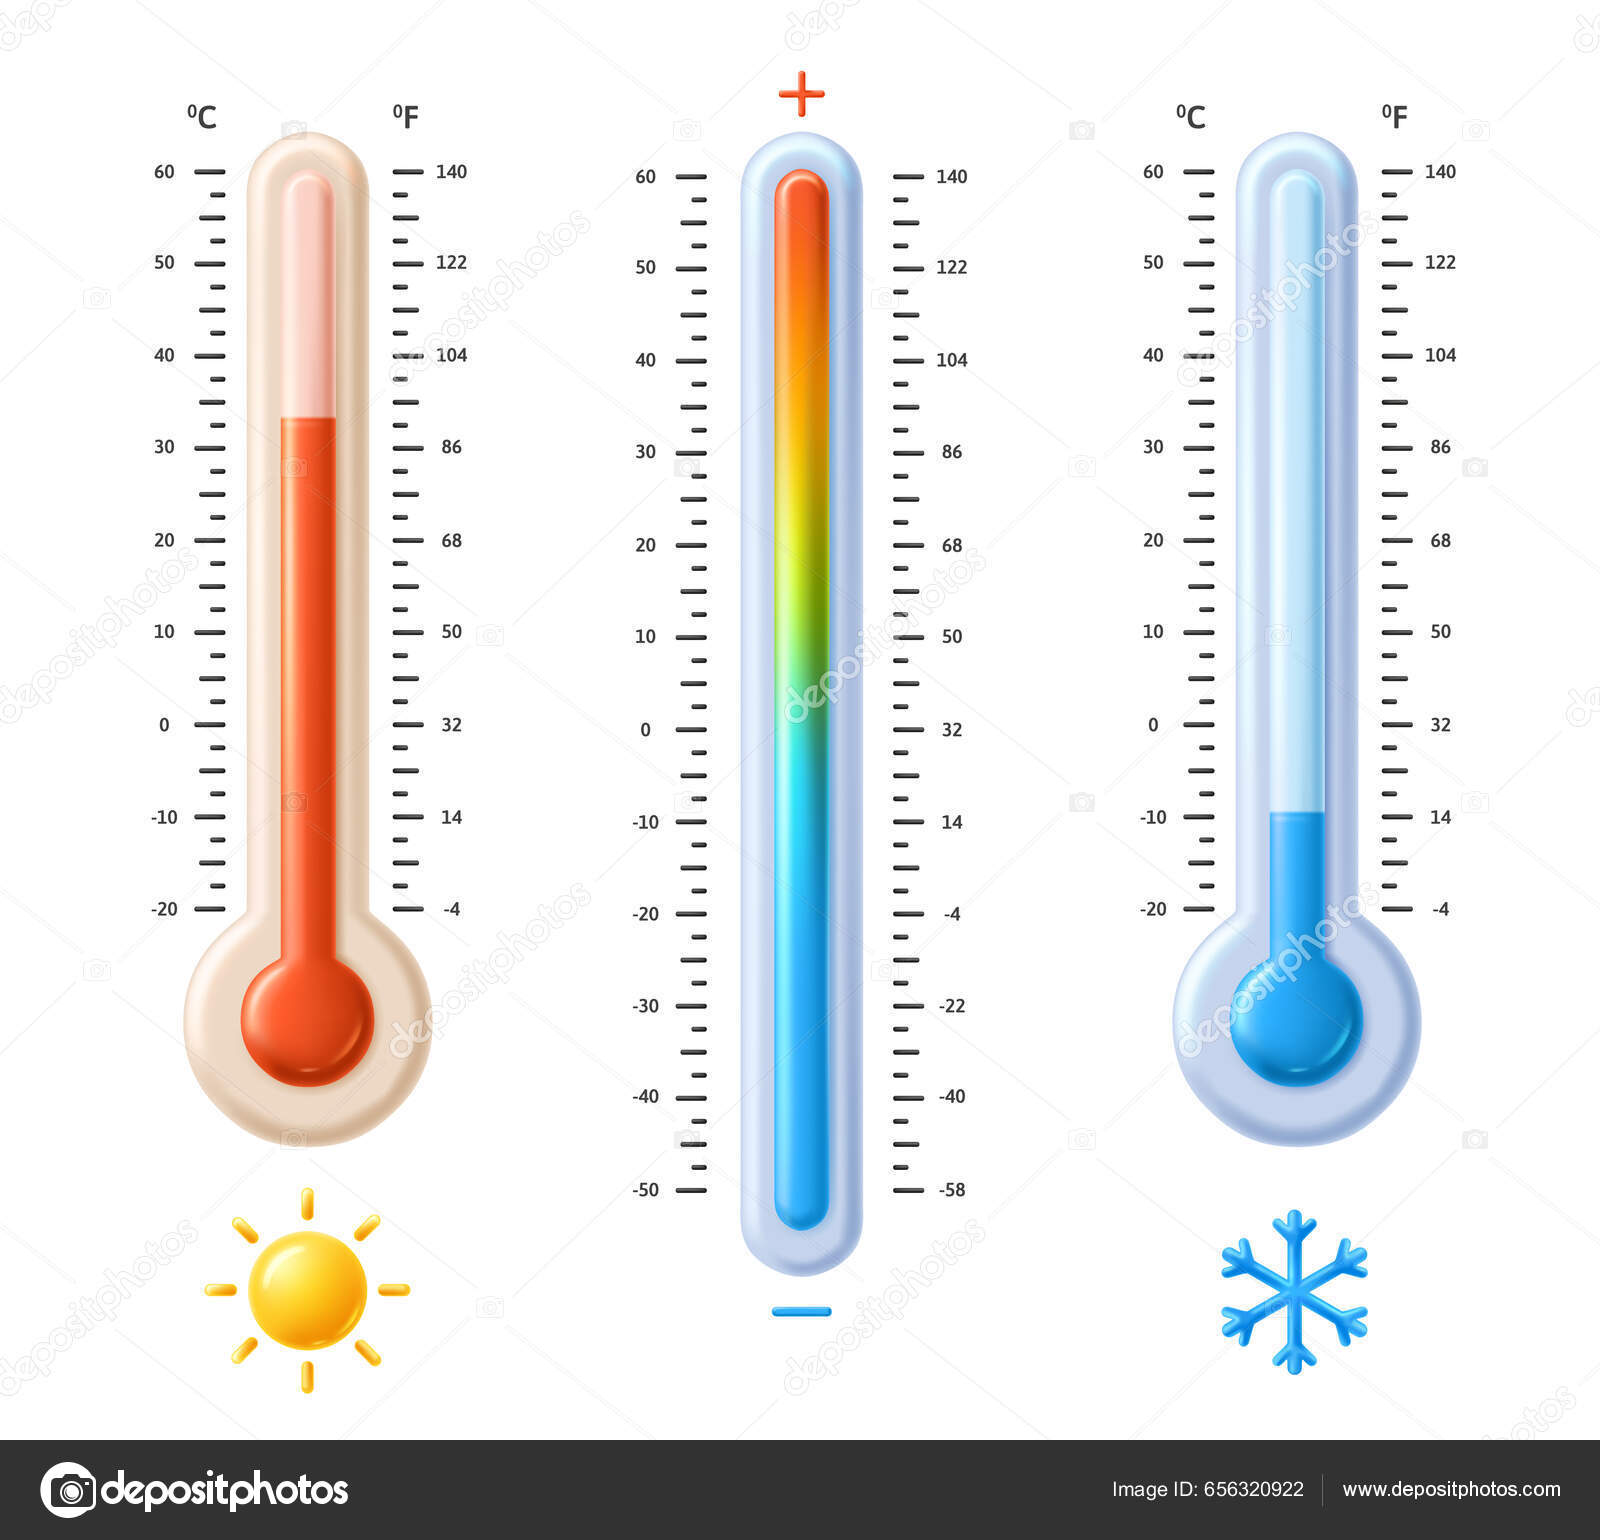 Termómetros Fahrenheit Celsius Escala Espectro Temperatura Con Sol Caliente  Los Vector de Stock de ©winwin.artlab@gmail.com 656320922